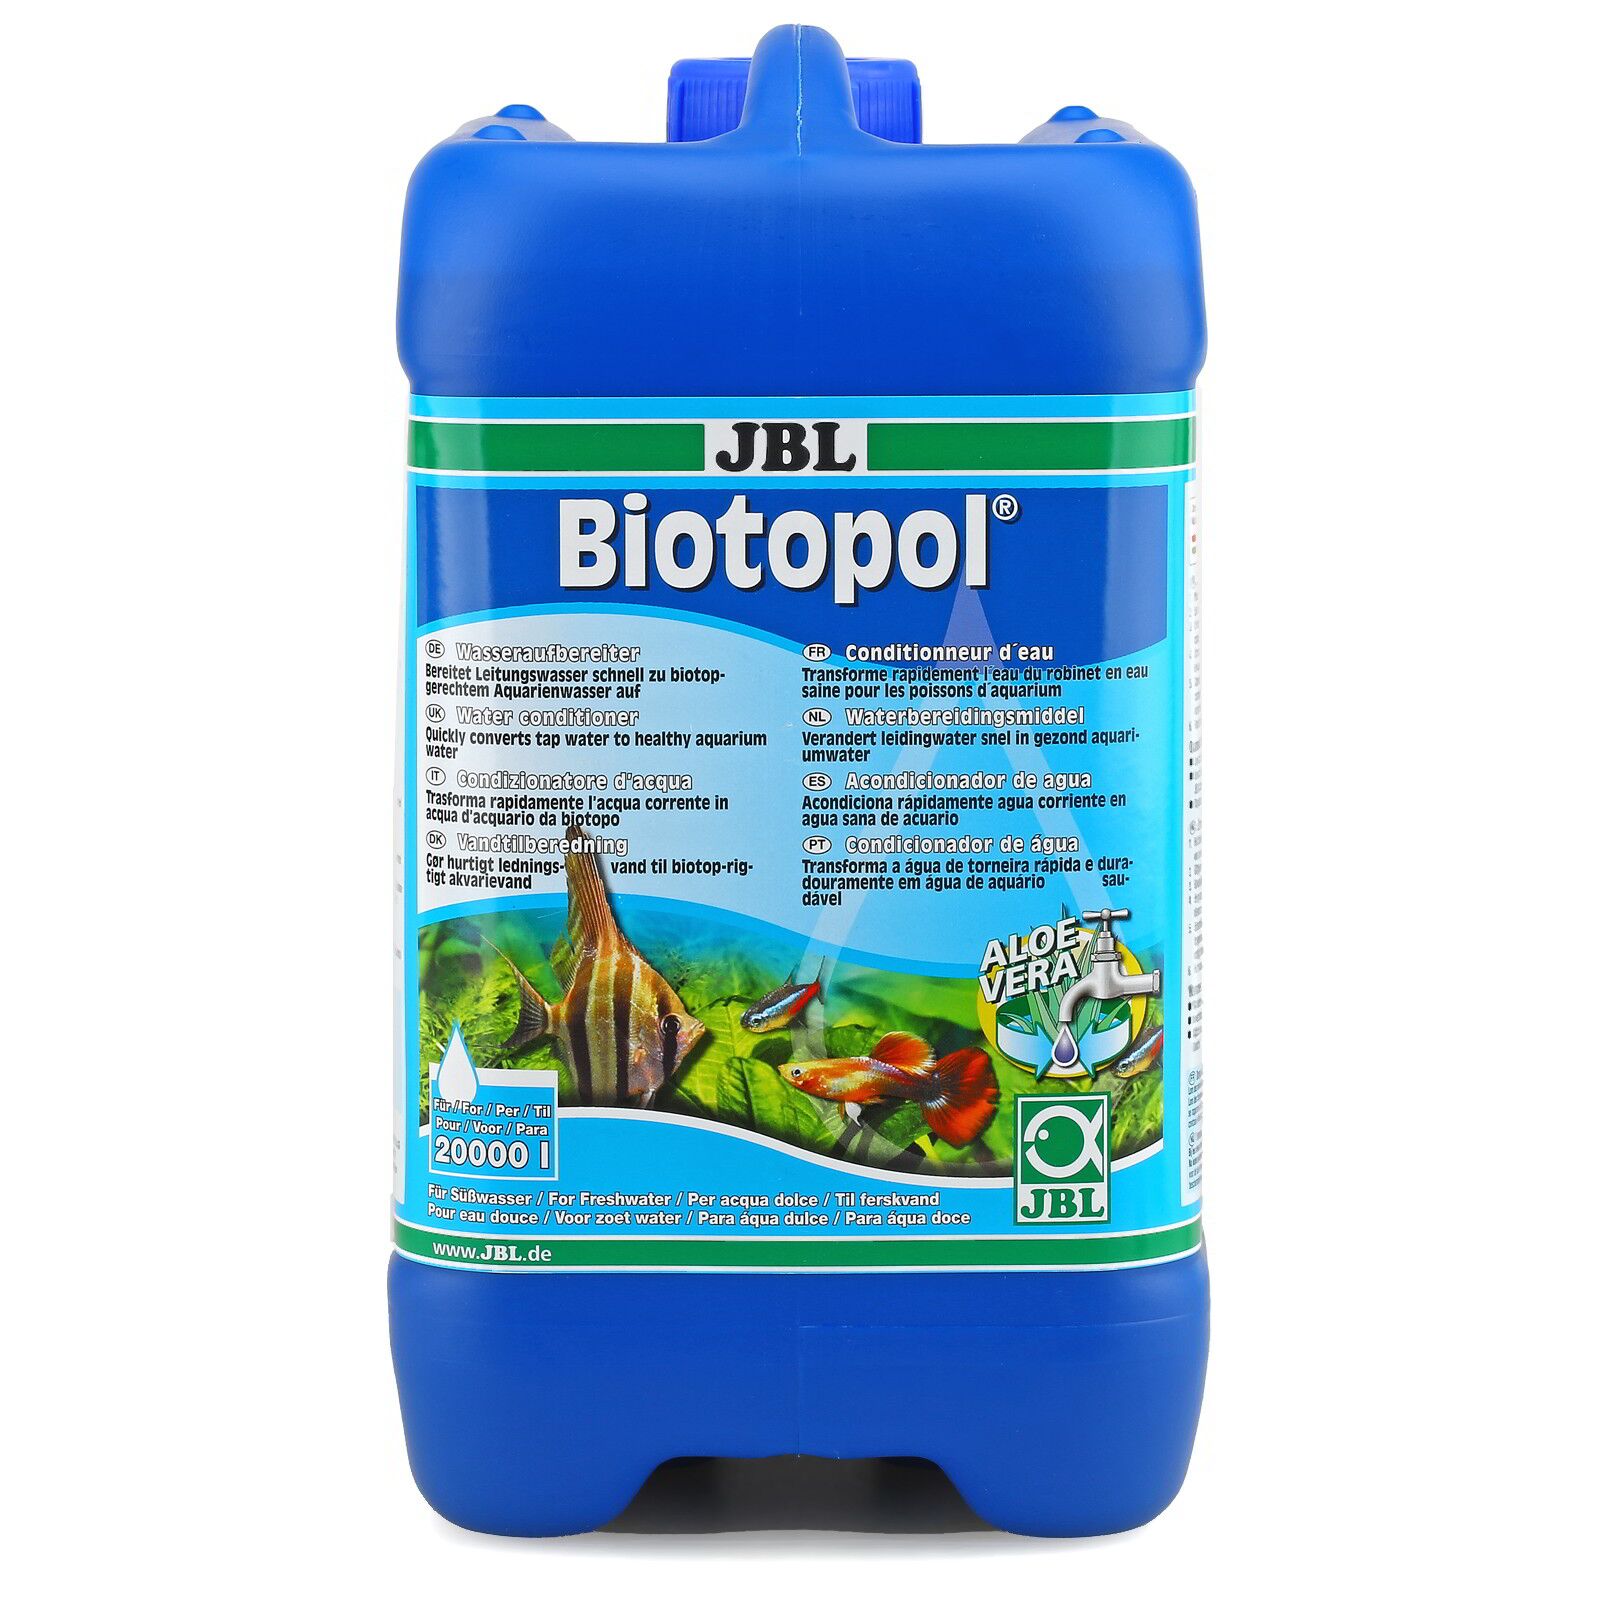 JBL Biotopol Conditionneur d'eau douce